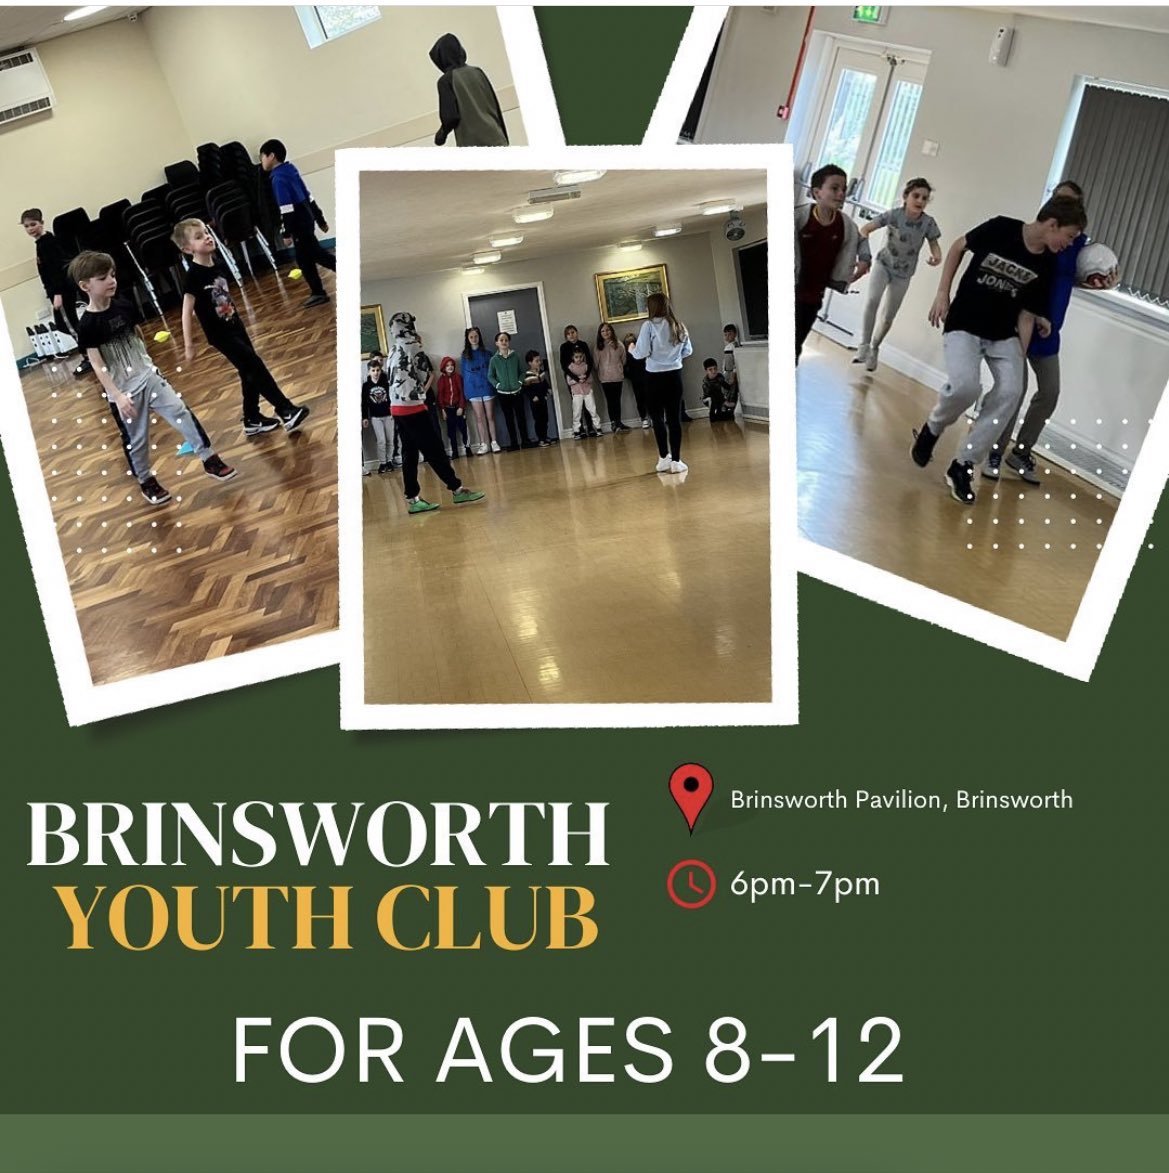 BRINSWORTH YOUTH CLUB🙌

Tomorrows Brinsworth youth club is on as usual..

📍 Brinsworth Pavilion
⏰ 6pm-7pm

For ages 8-12🙌

#brinsworthpavilion #activeregen #activeregenrotherham #youthclubs #brinsworth #youthclubsocial